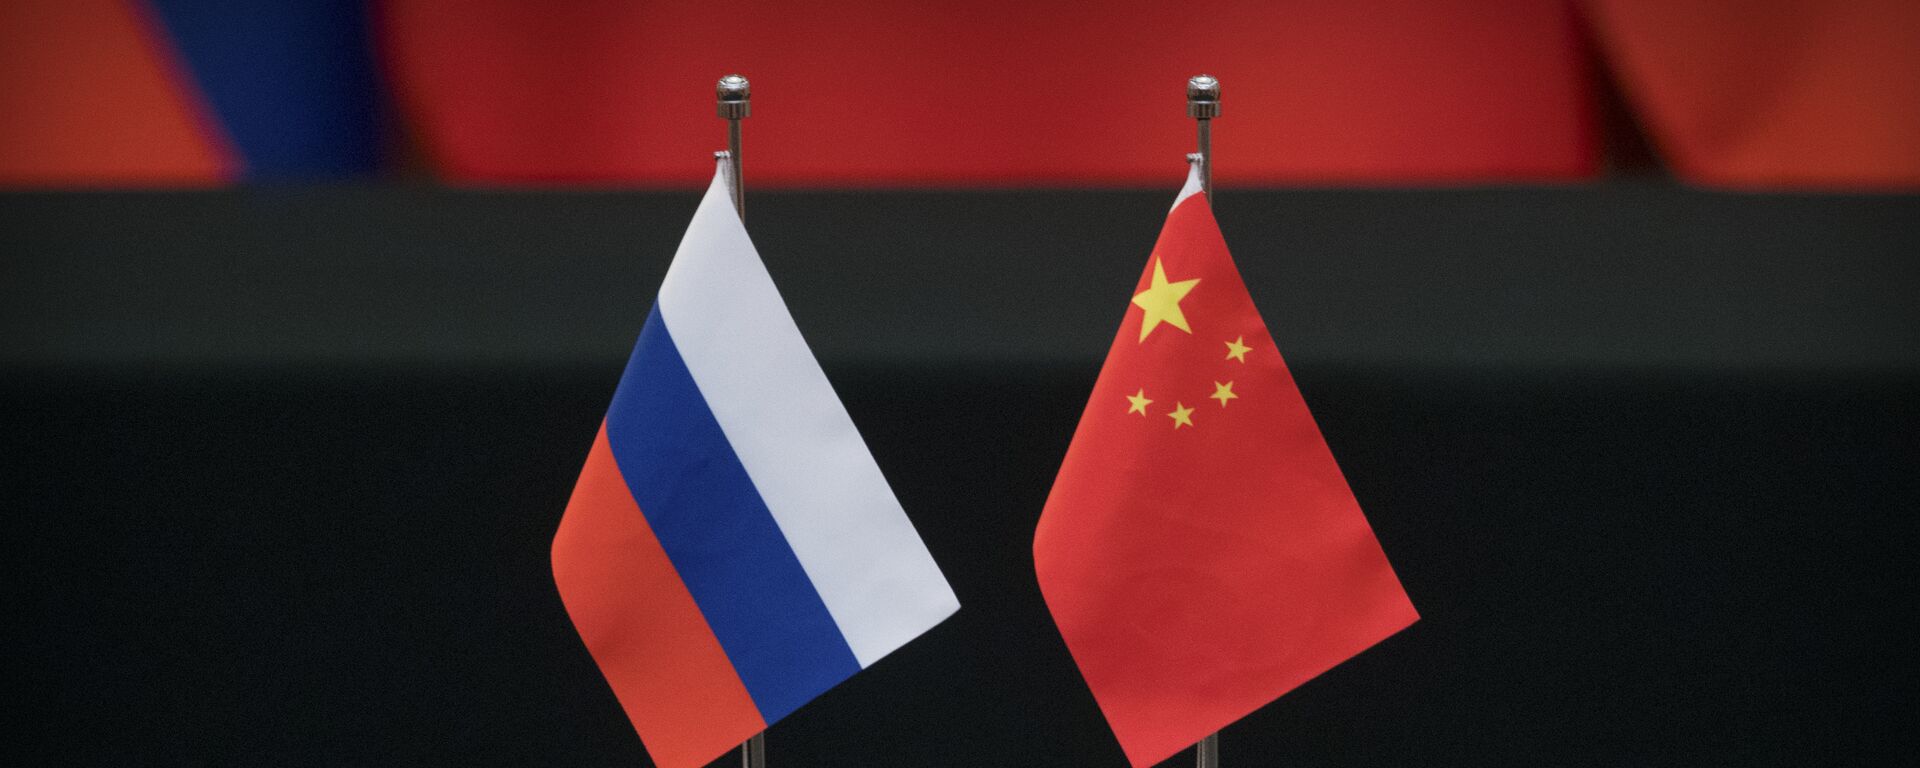 Las banderas de Rusia y China - Sputnik Mundo, 1920, 05.02.2021